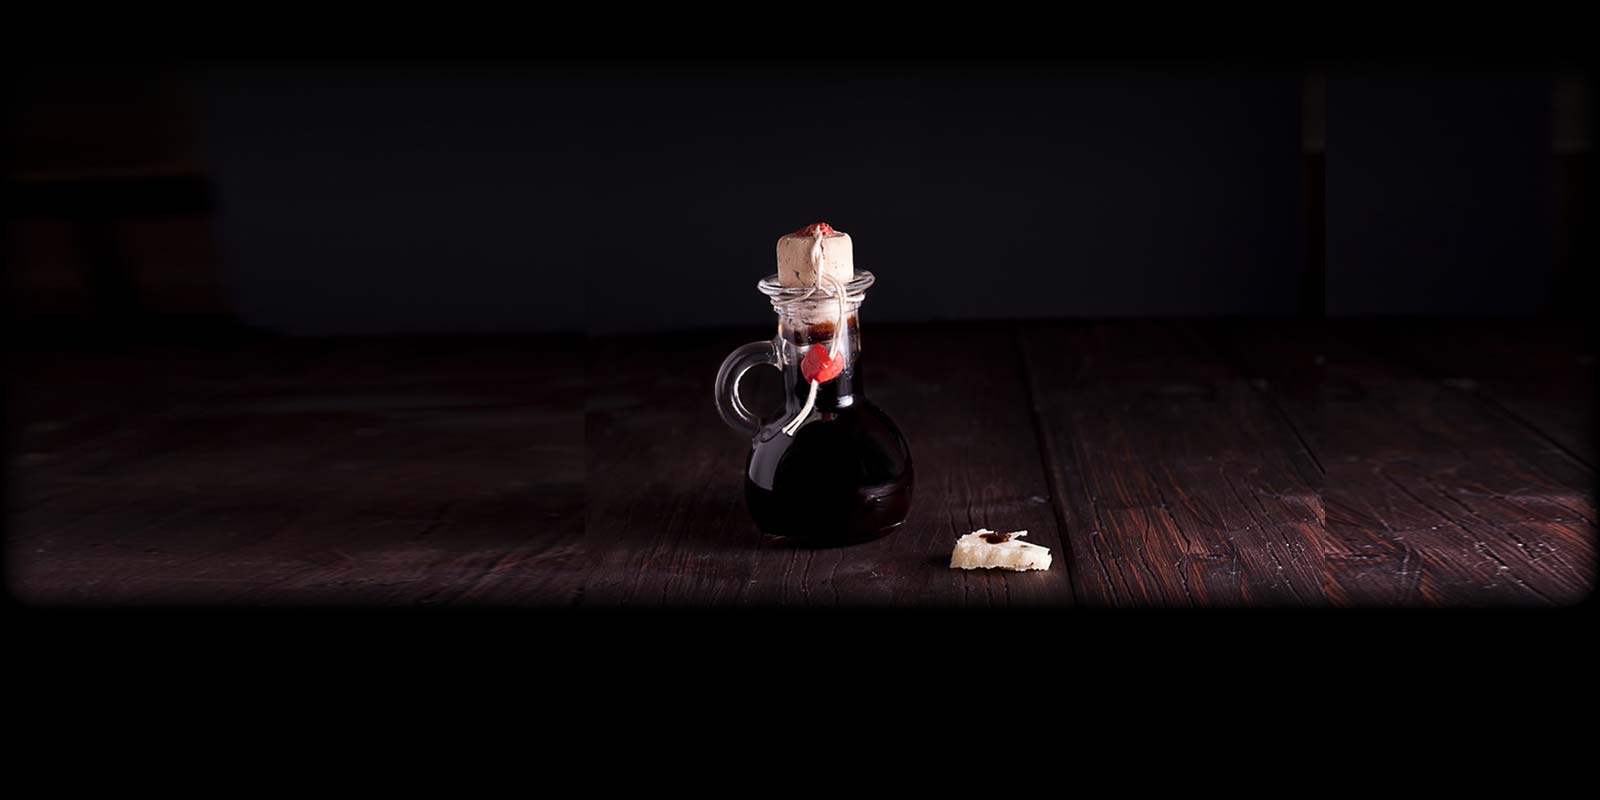 Aceto Balsamic Tradicional Aquest vinagre es un producte purament natural, lliure de conservants i colorants. Nomes es produeixen al voltant de 10.000 litres cada any, cosa que el converteix en un dels vinagres mes rars i valuosos del mon.